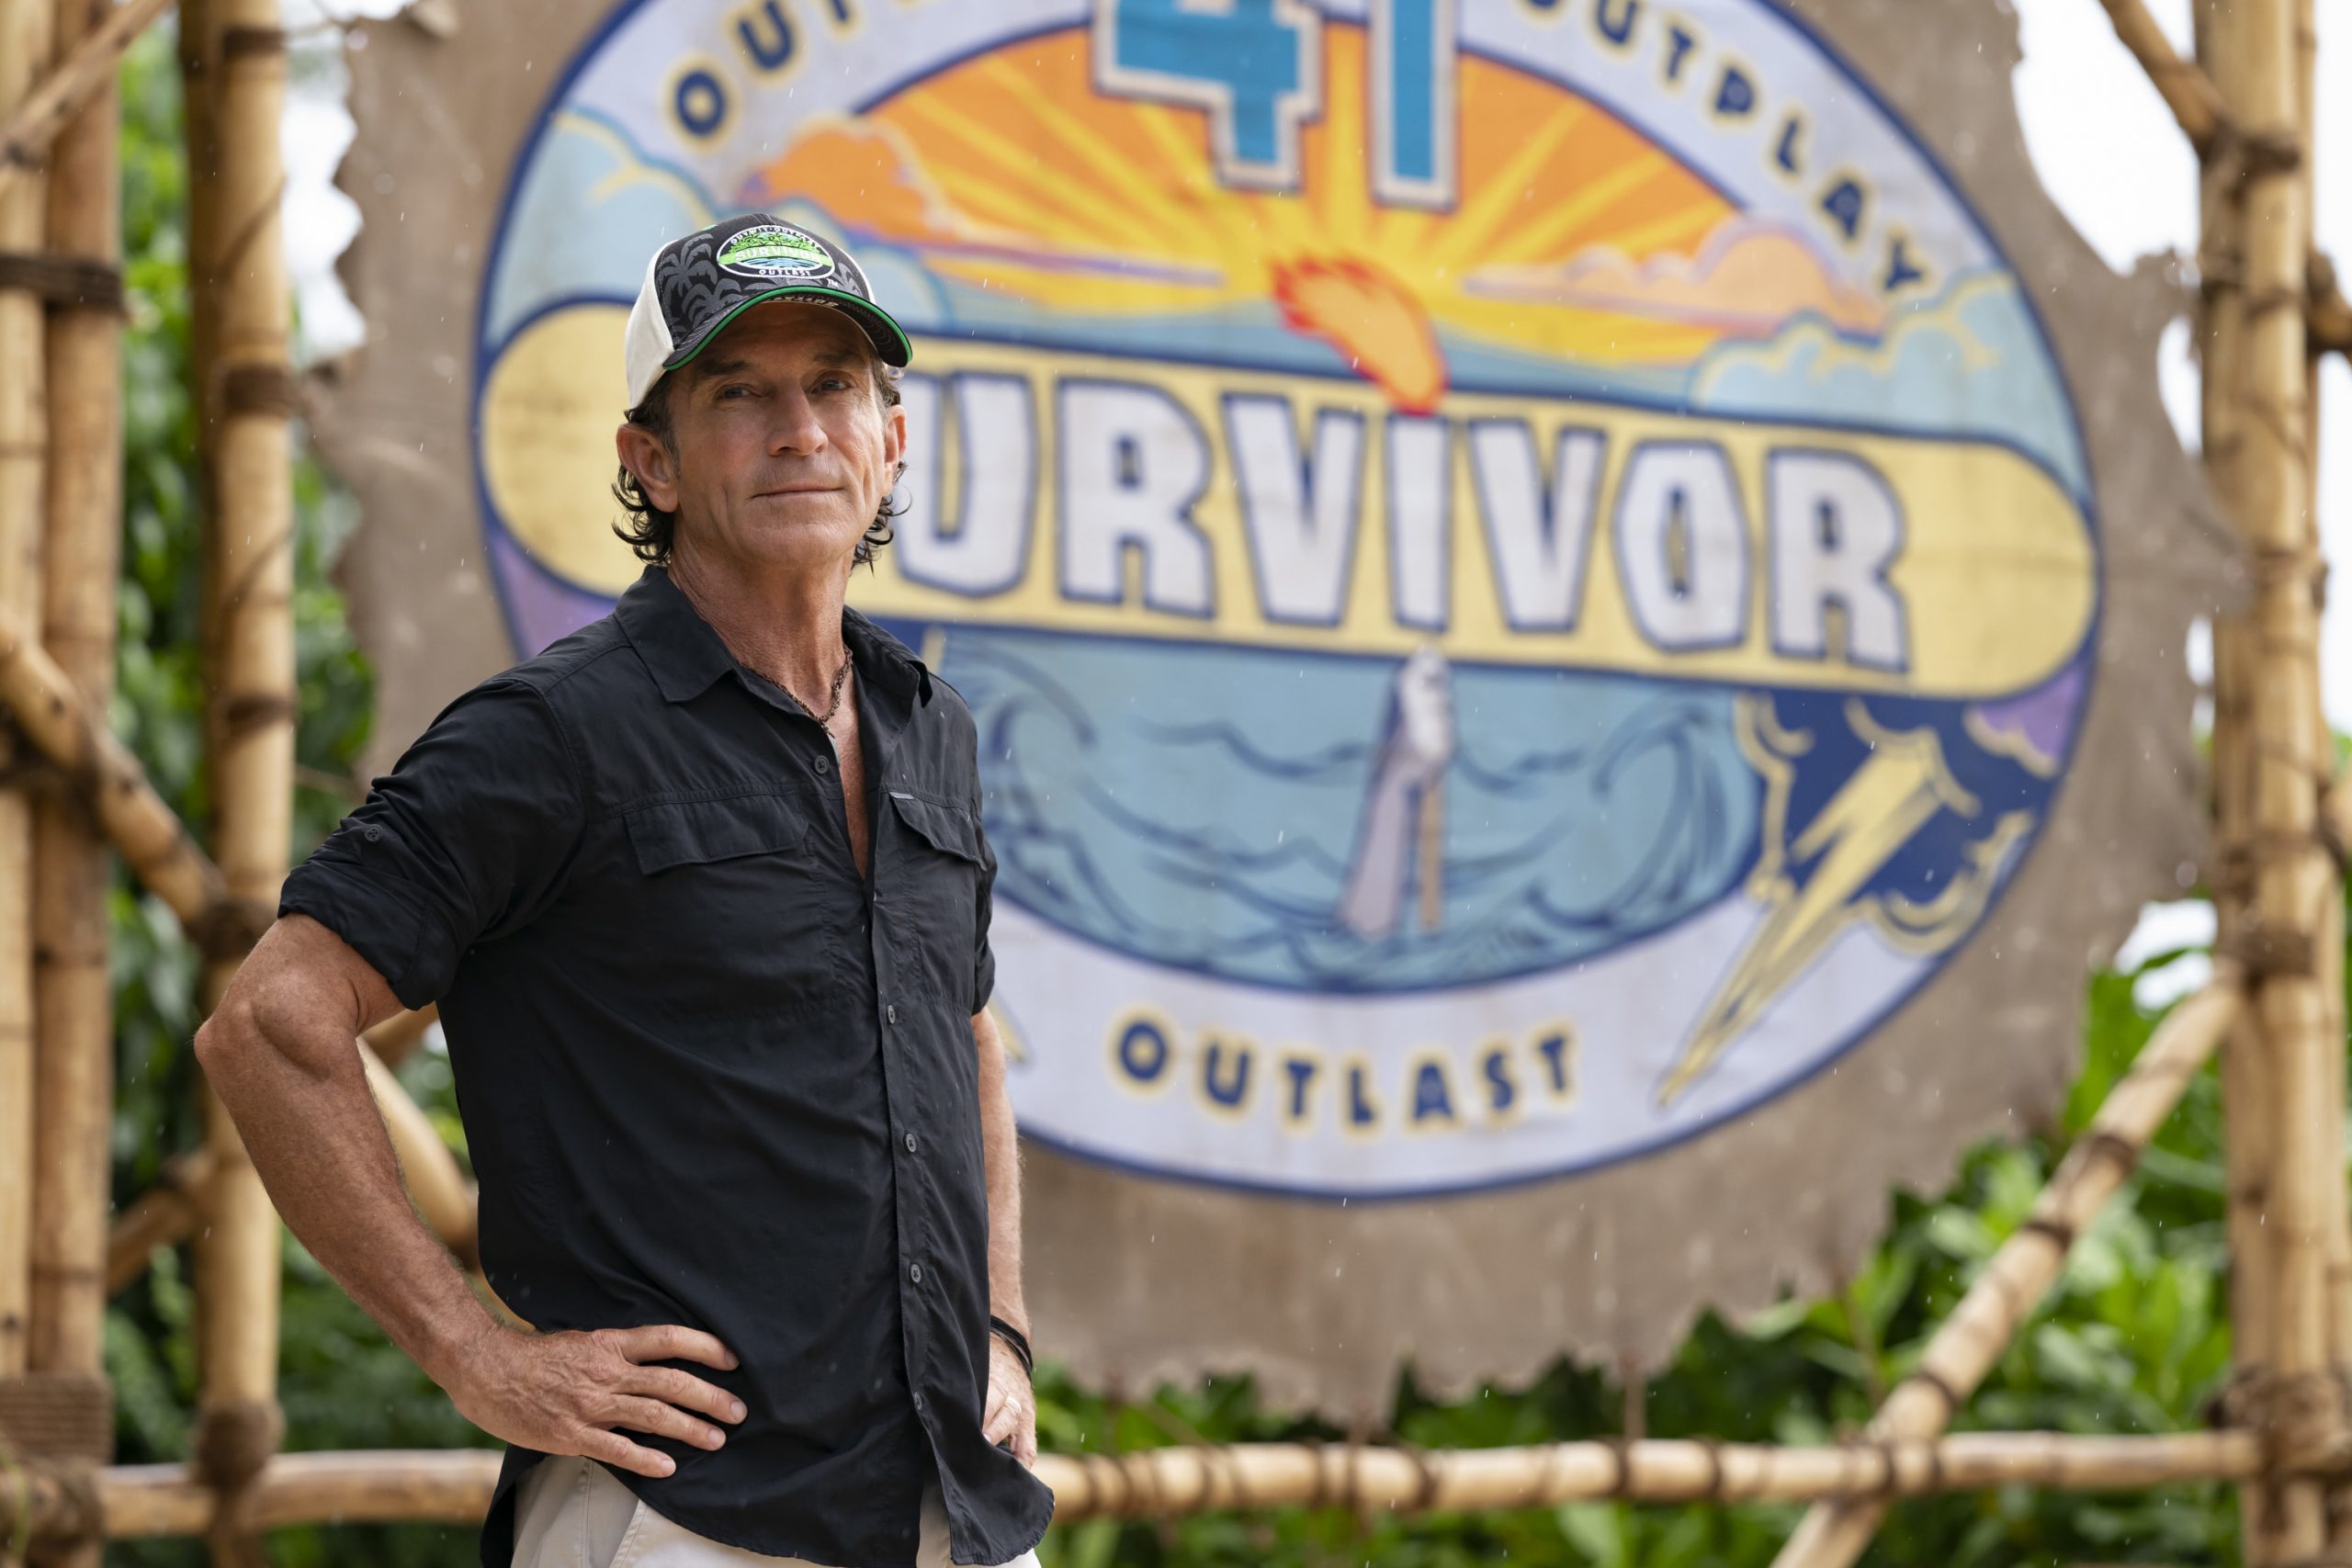 Jeff Probst on 'Survivor'